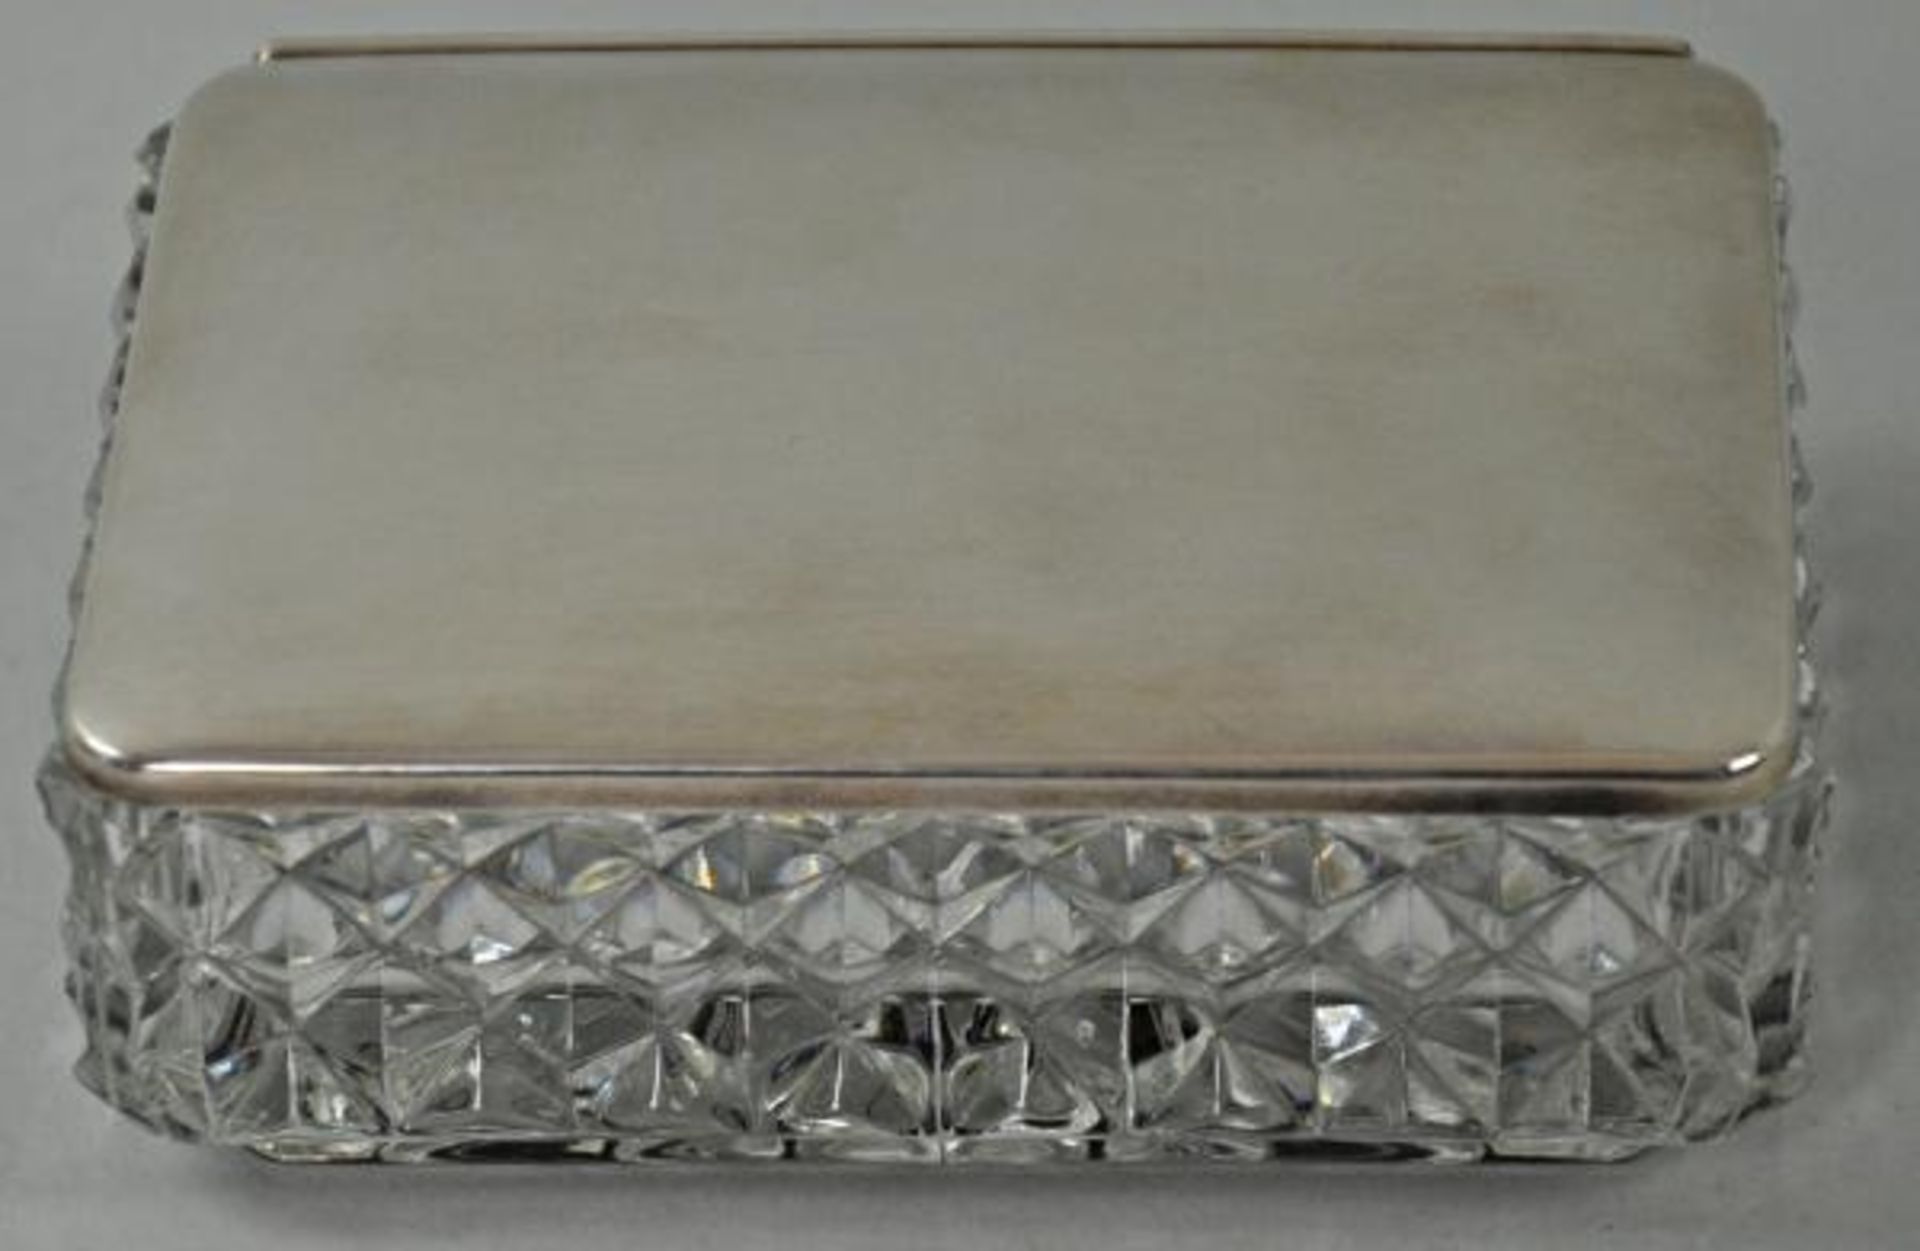 DECKELDOSE rechteckige Form, geschliffener Kristallkorpus, Deckel aus 800er Silber, 4x12x9,5cm - Image 2 of 3